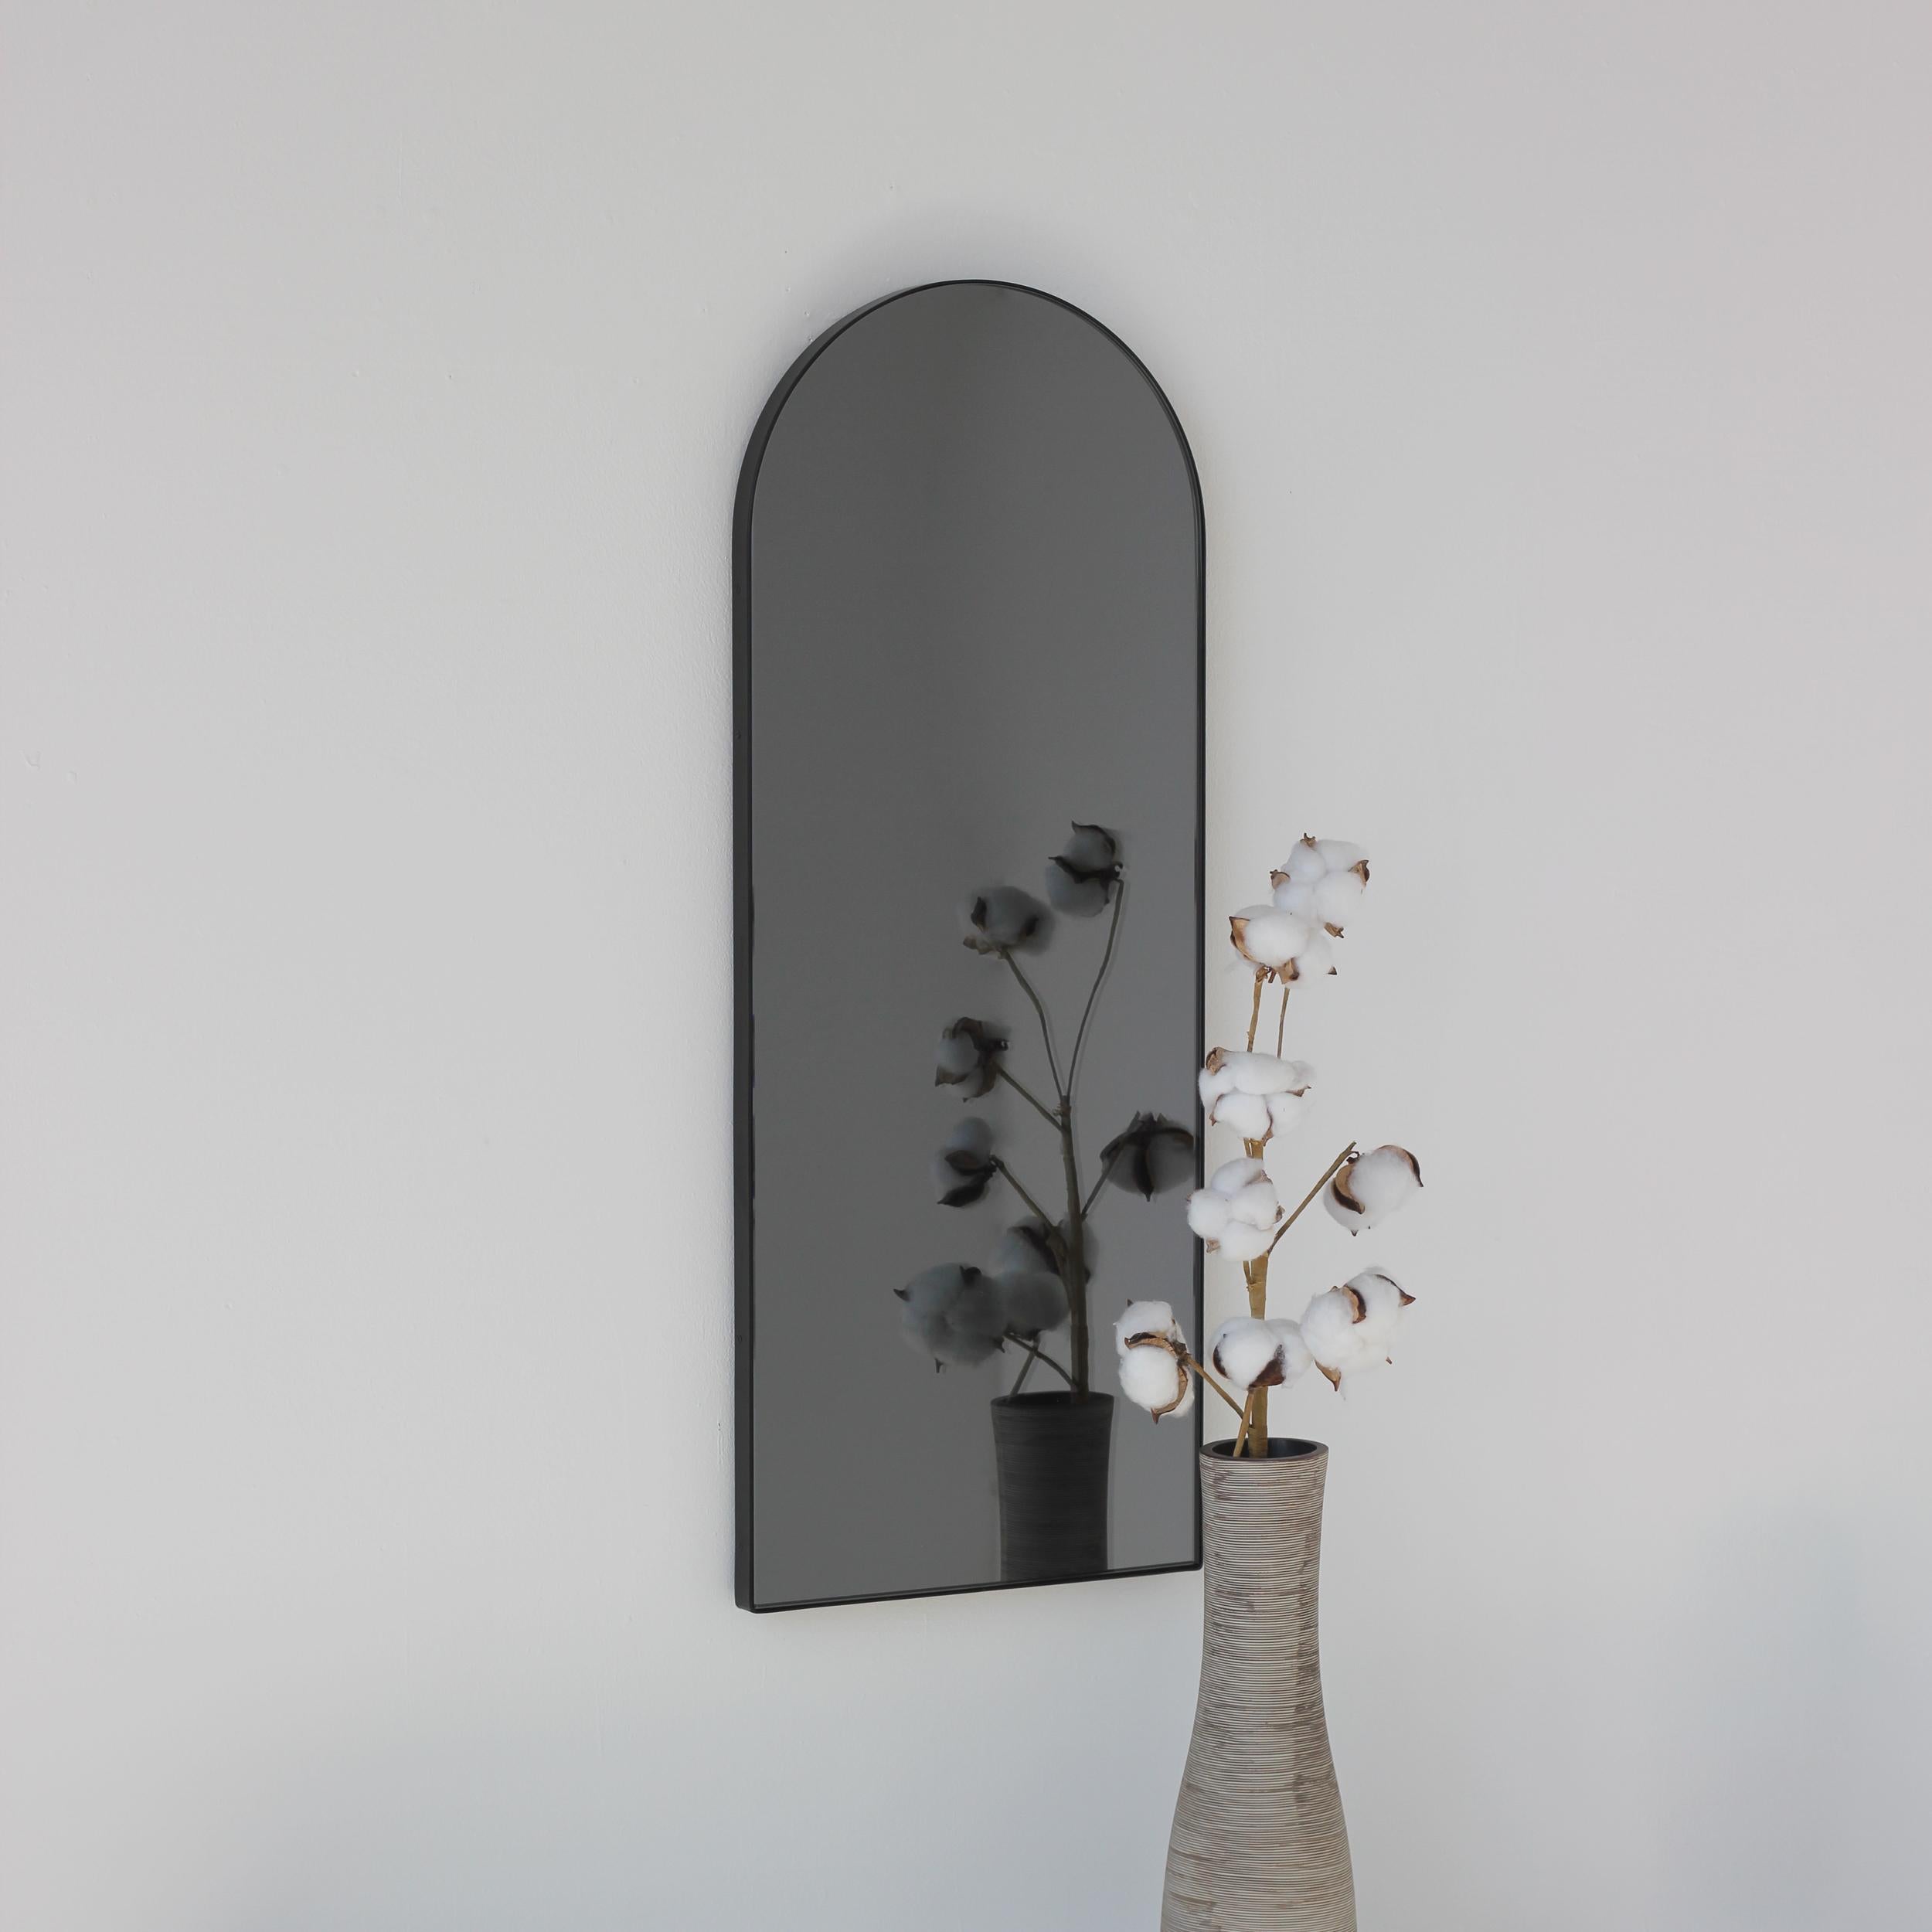 Moderner bogenförmiger, schwarz getönter Spiegel mit elegantem schwarzem Rahmen. Entworfen und handgefertigt in London, UK.

Die mittelgroßen, großen und extragroßen Spiegel (37 cm x 56 cm, 46 cm x 71 cm und 48 cm x 97 cm) sind mit einem